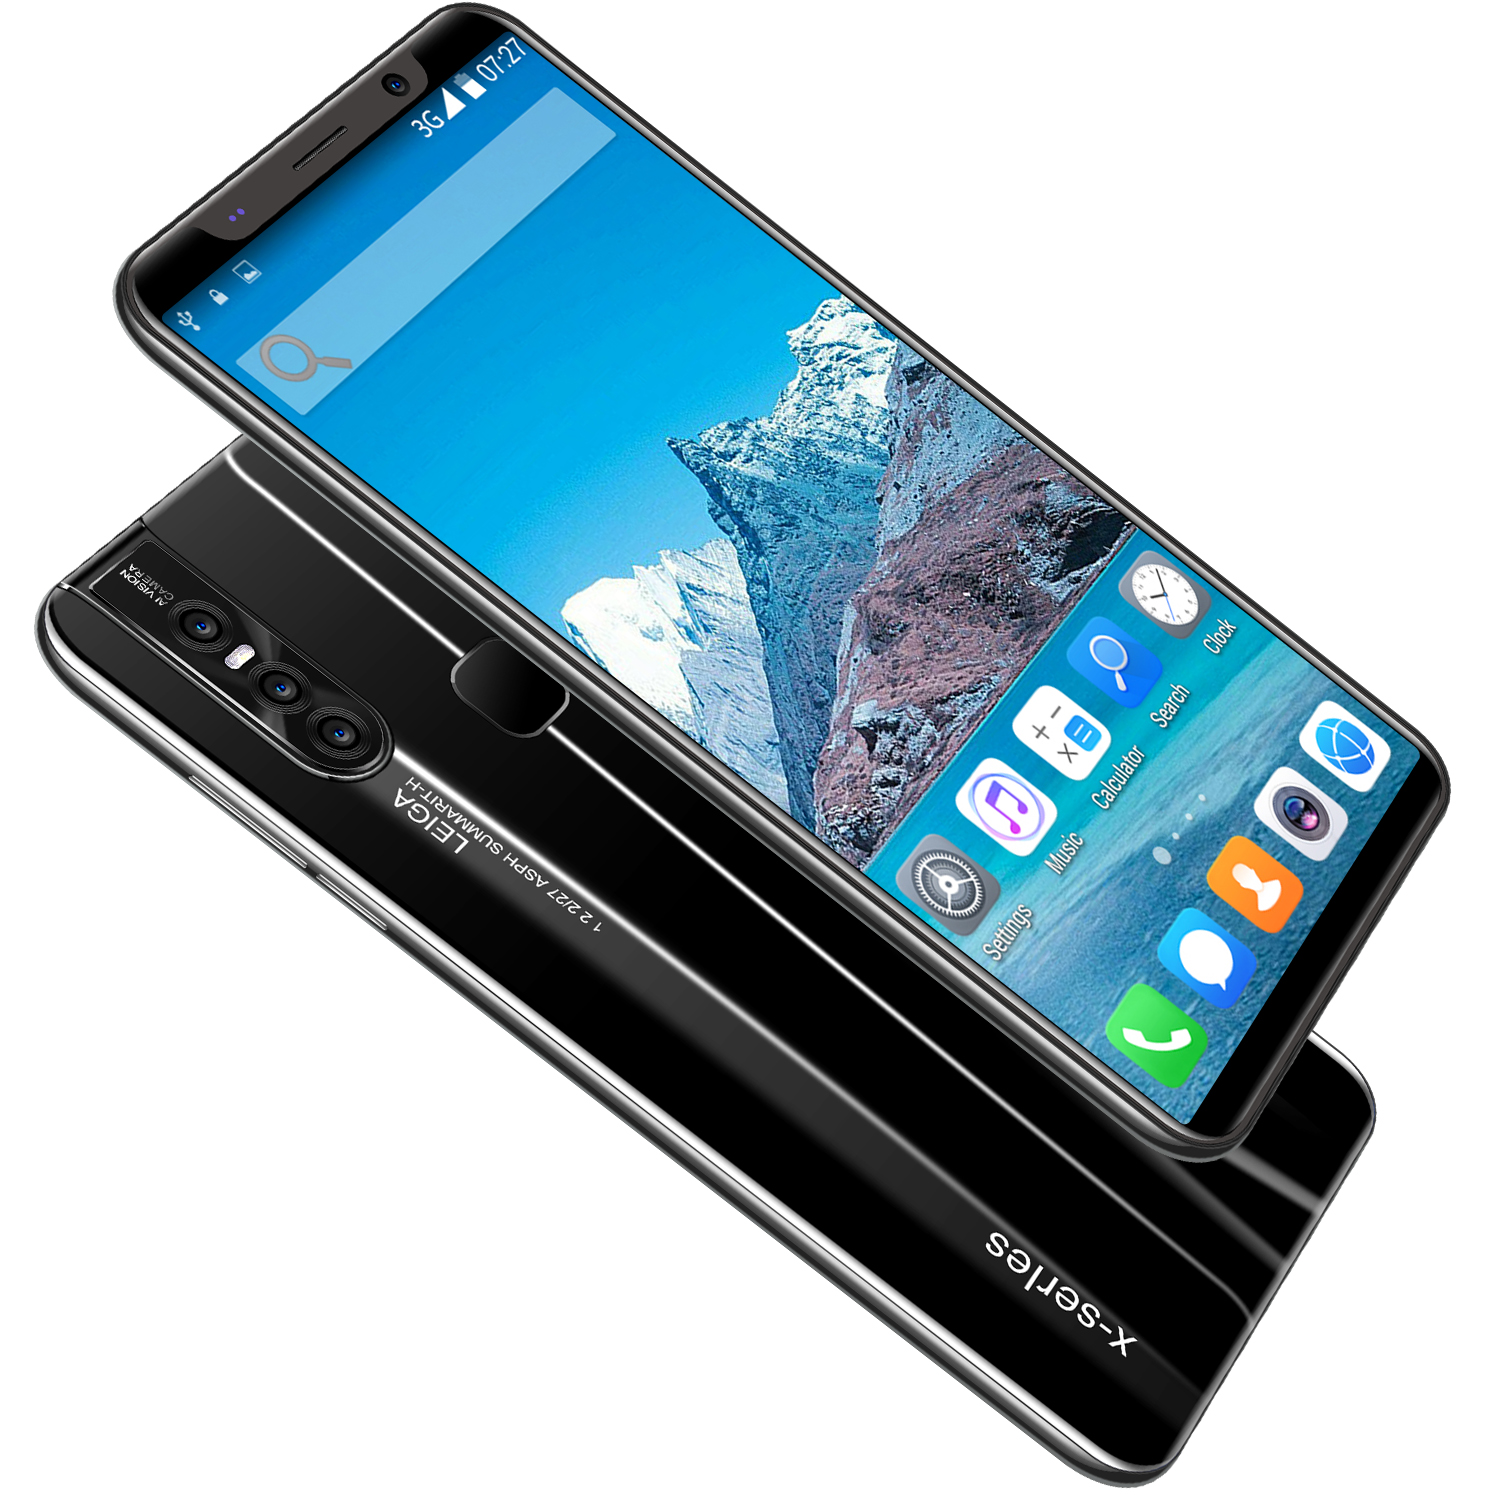 โทรศัพท์มือถือ 256G/128G/64G มือถือราคาถูก 7600mah โทรศัพท์มือถือลดราคา big screen หน่วยความจำขนาดใหญ่ ปลดล็อคสมาร์ทโฟน screen 5.0นิ้ว-6.8นิ้ว smartphone